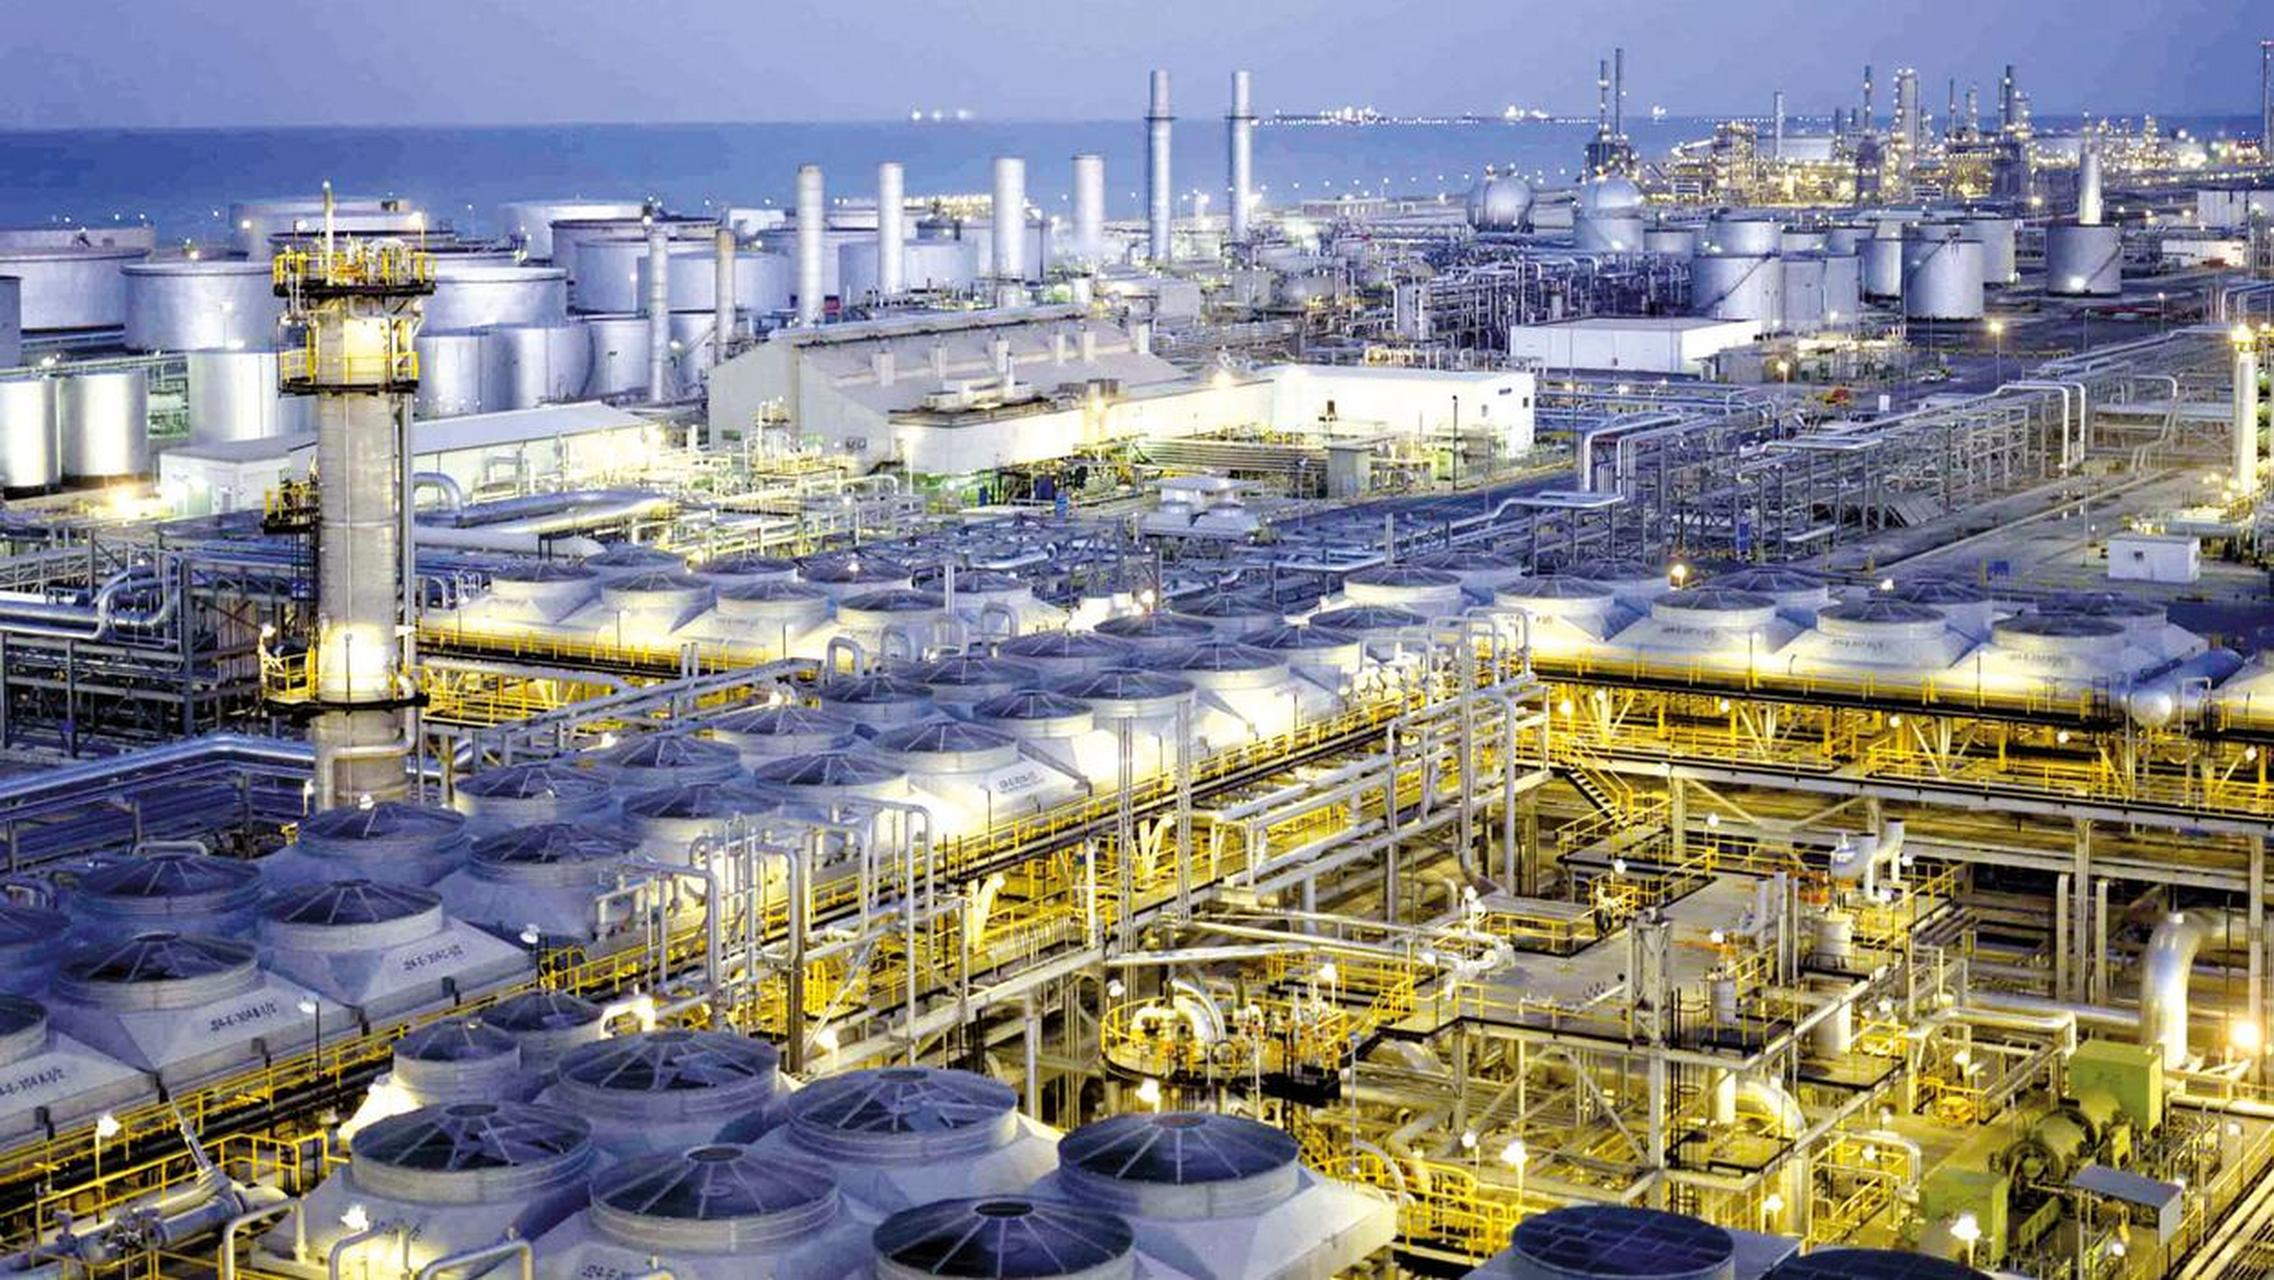 全球最大石油公司——沙特国家石油公司(saudi aramco,沙特阿美)宣布